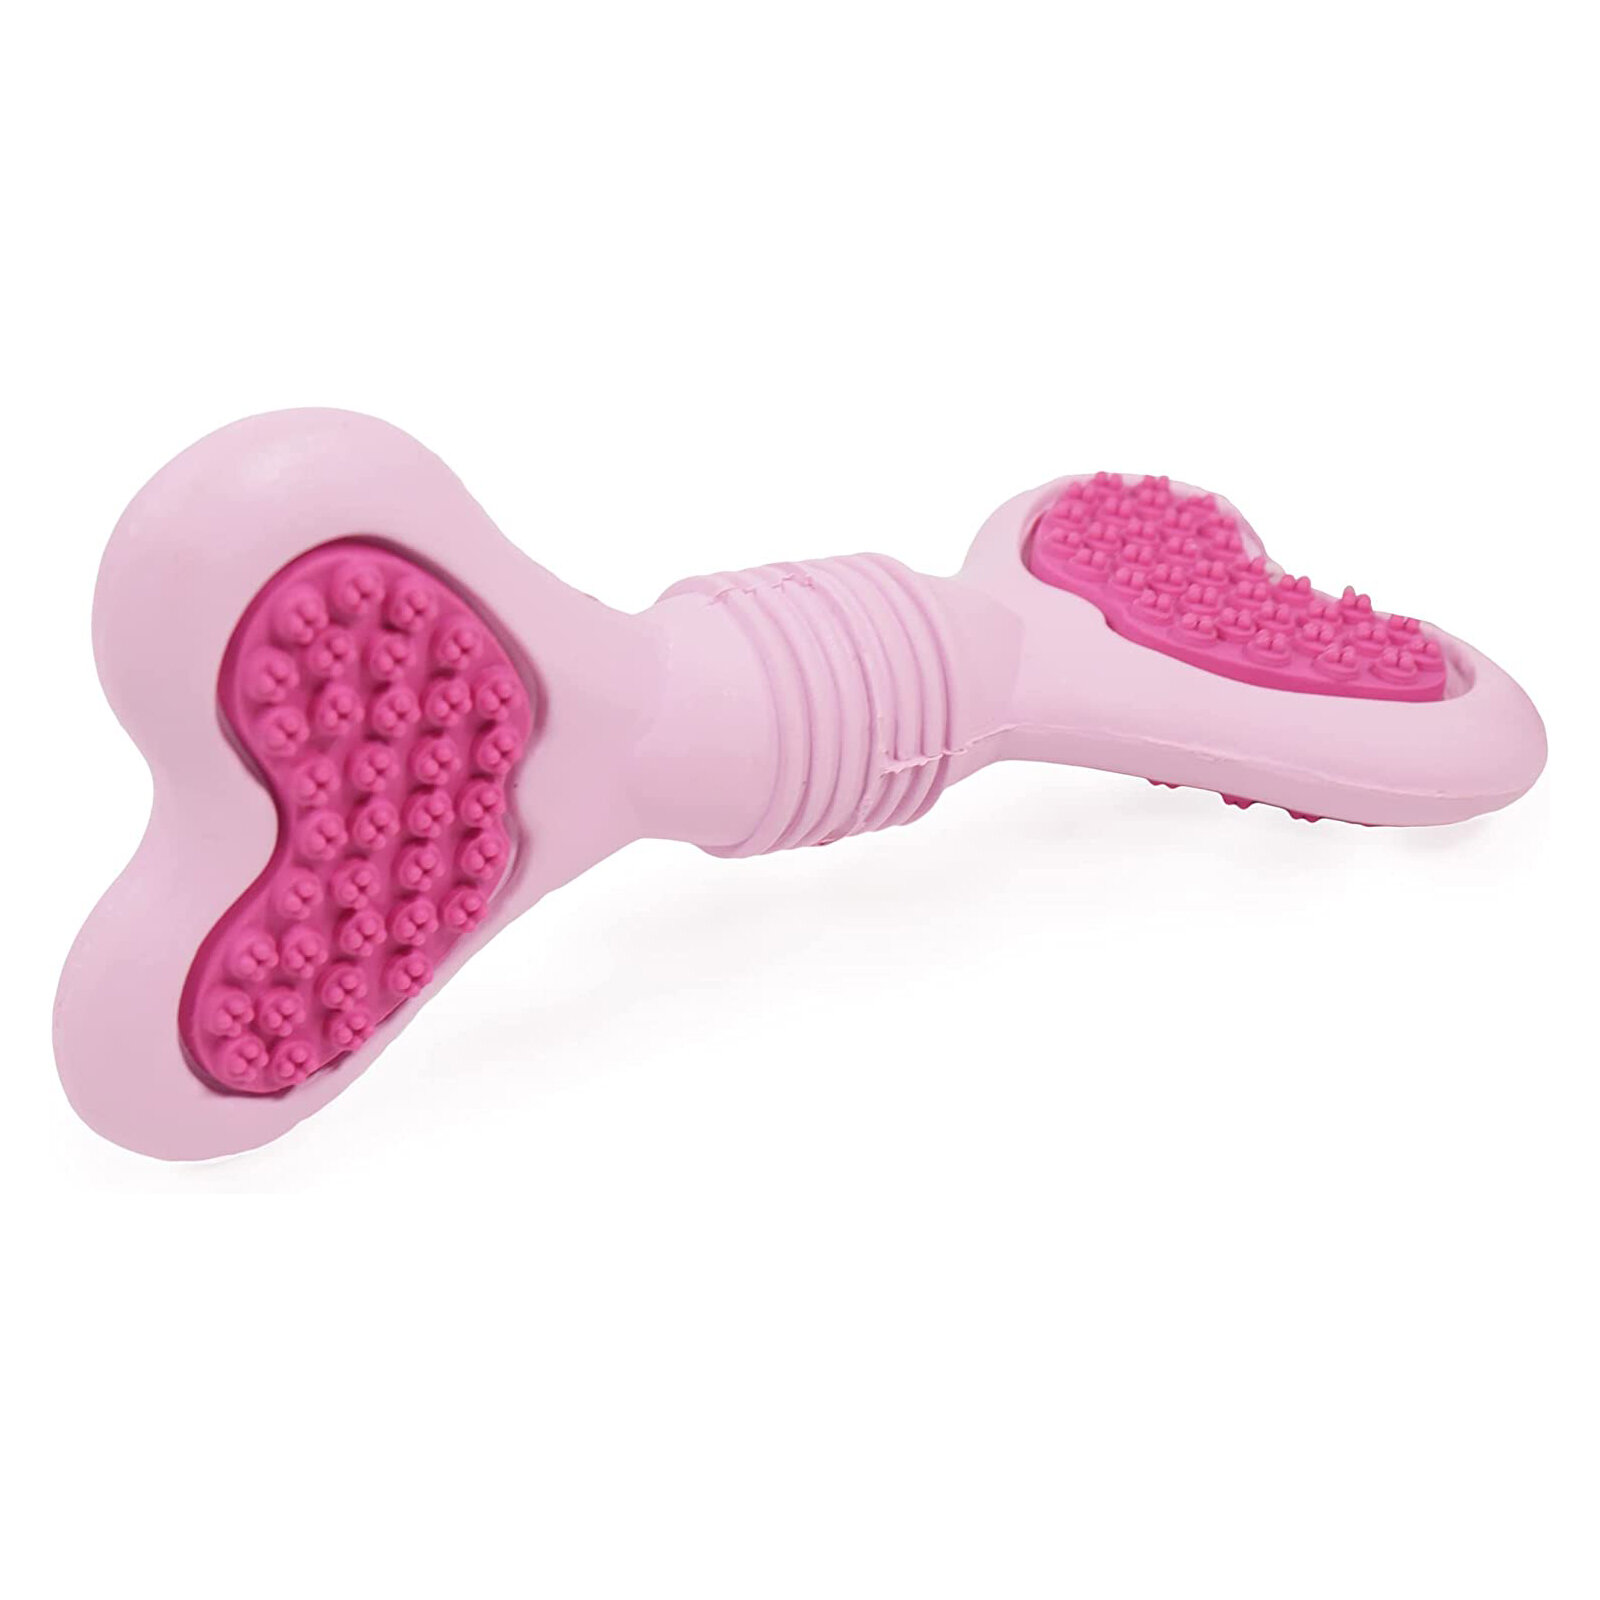 Игрушка для собак резиновая ROSEWOOD "Кость", розовая, 16cм (Великобритания)